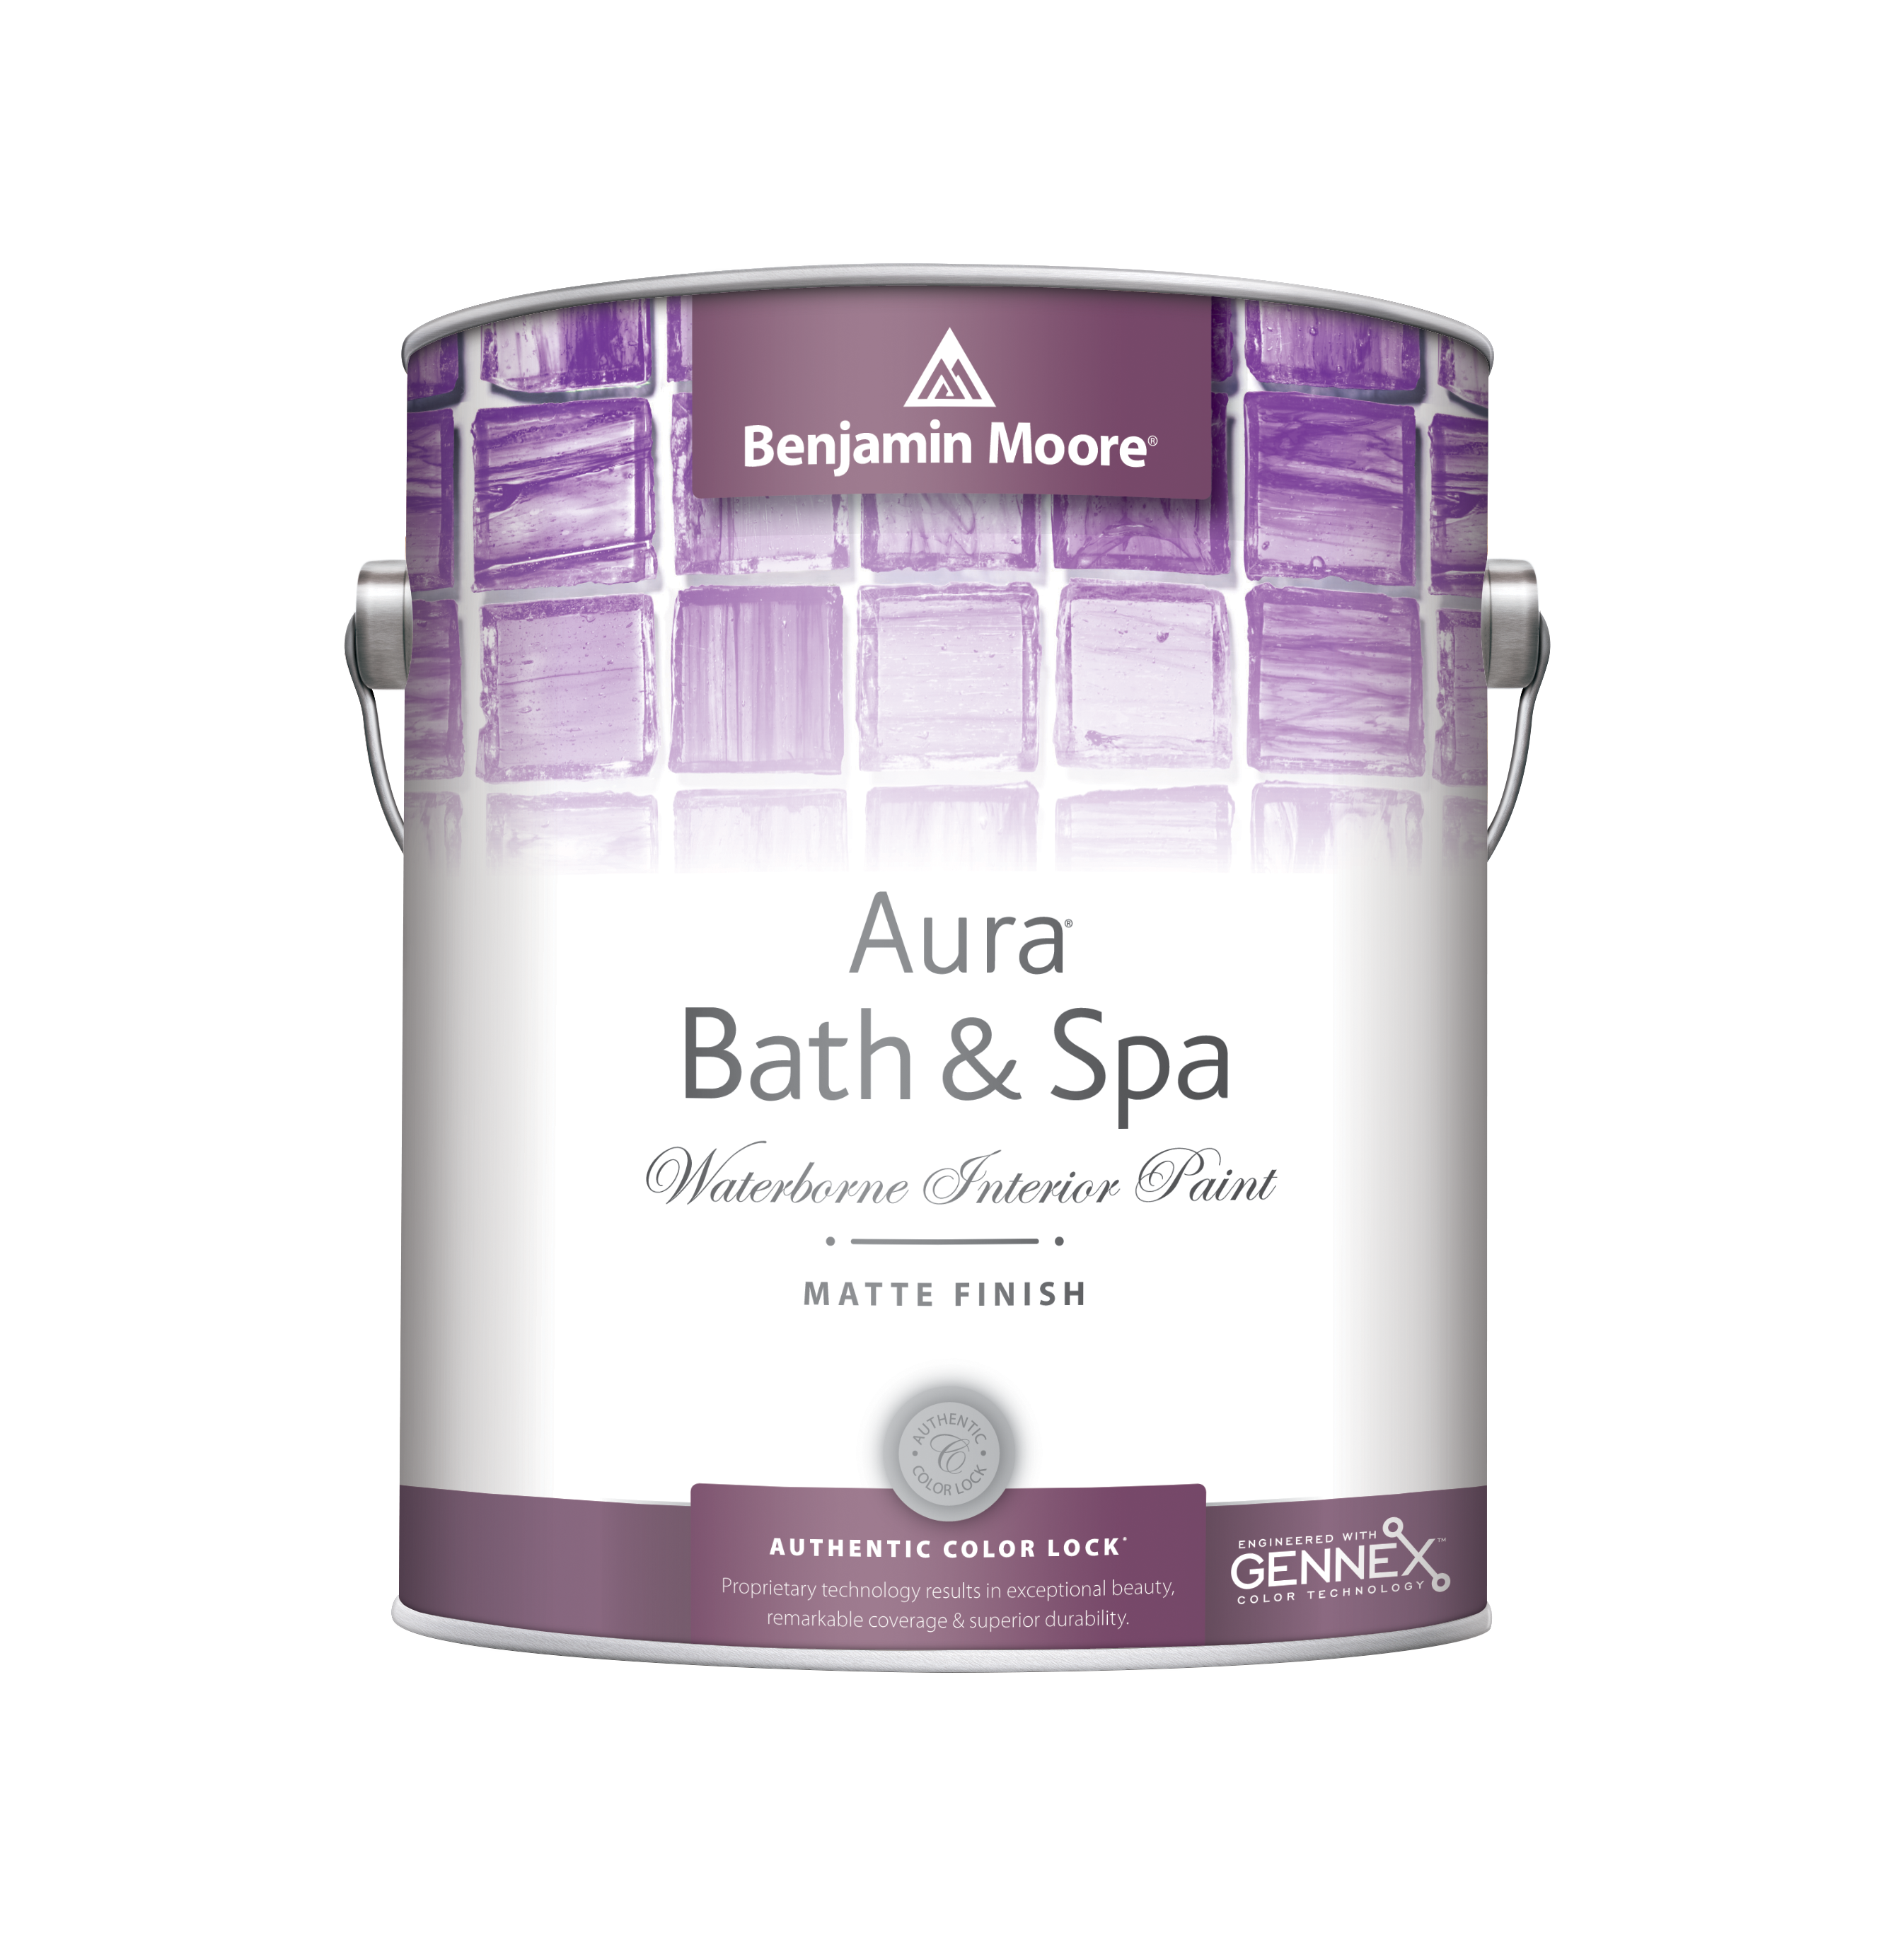 Купить benjamin moore aura bath and spa matte finish 532 (бенжамин моор) краска матовая для ванных комнат от официального дилера BENJAMIN MOORE (БЕНЖАМИН МУР)